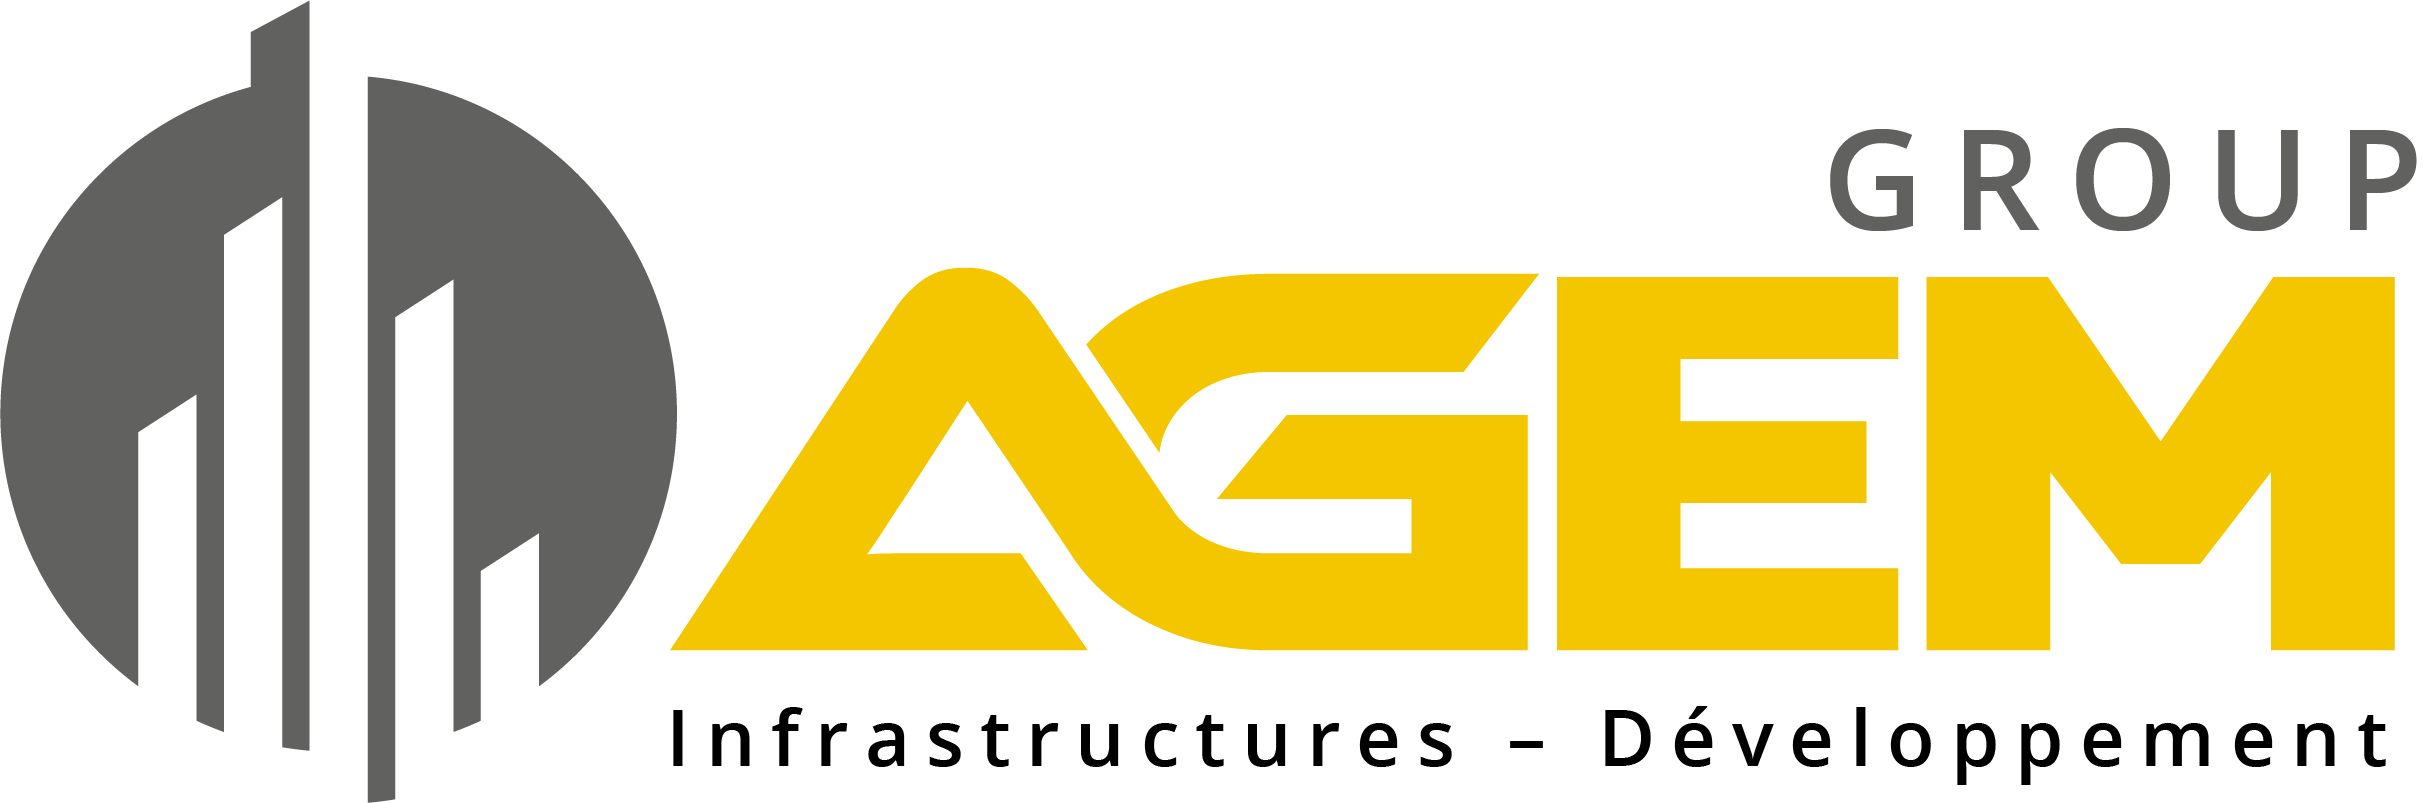 Agem Group